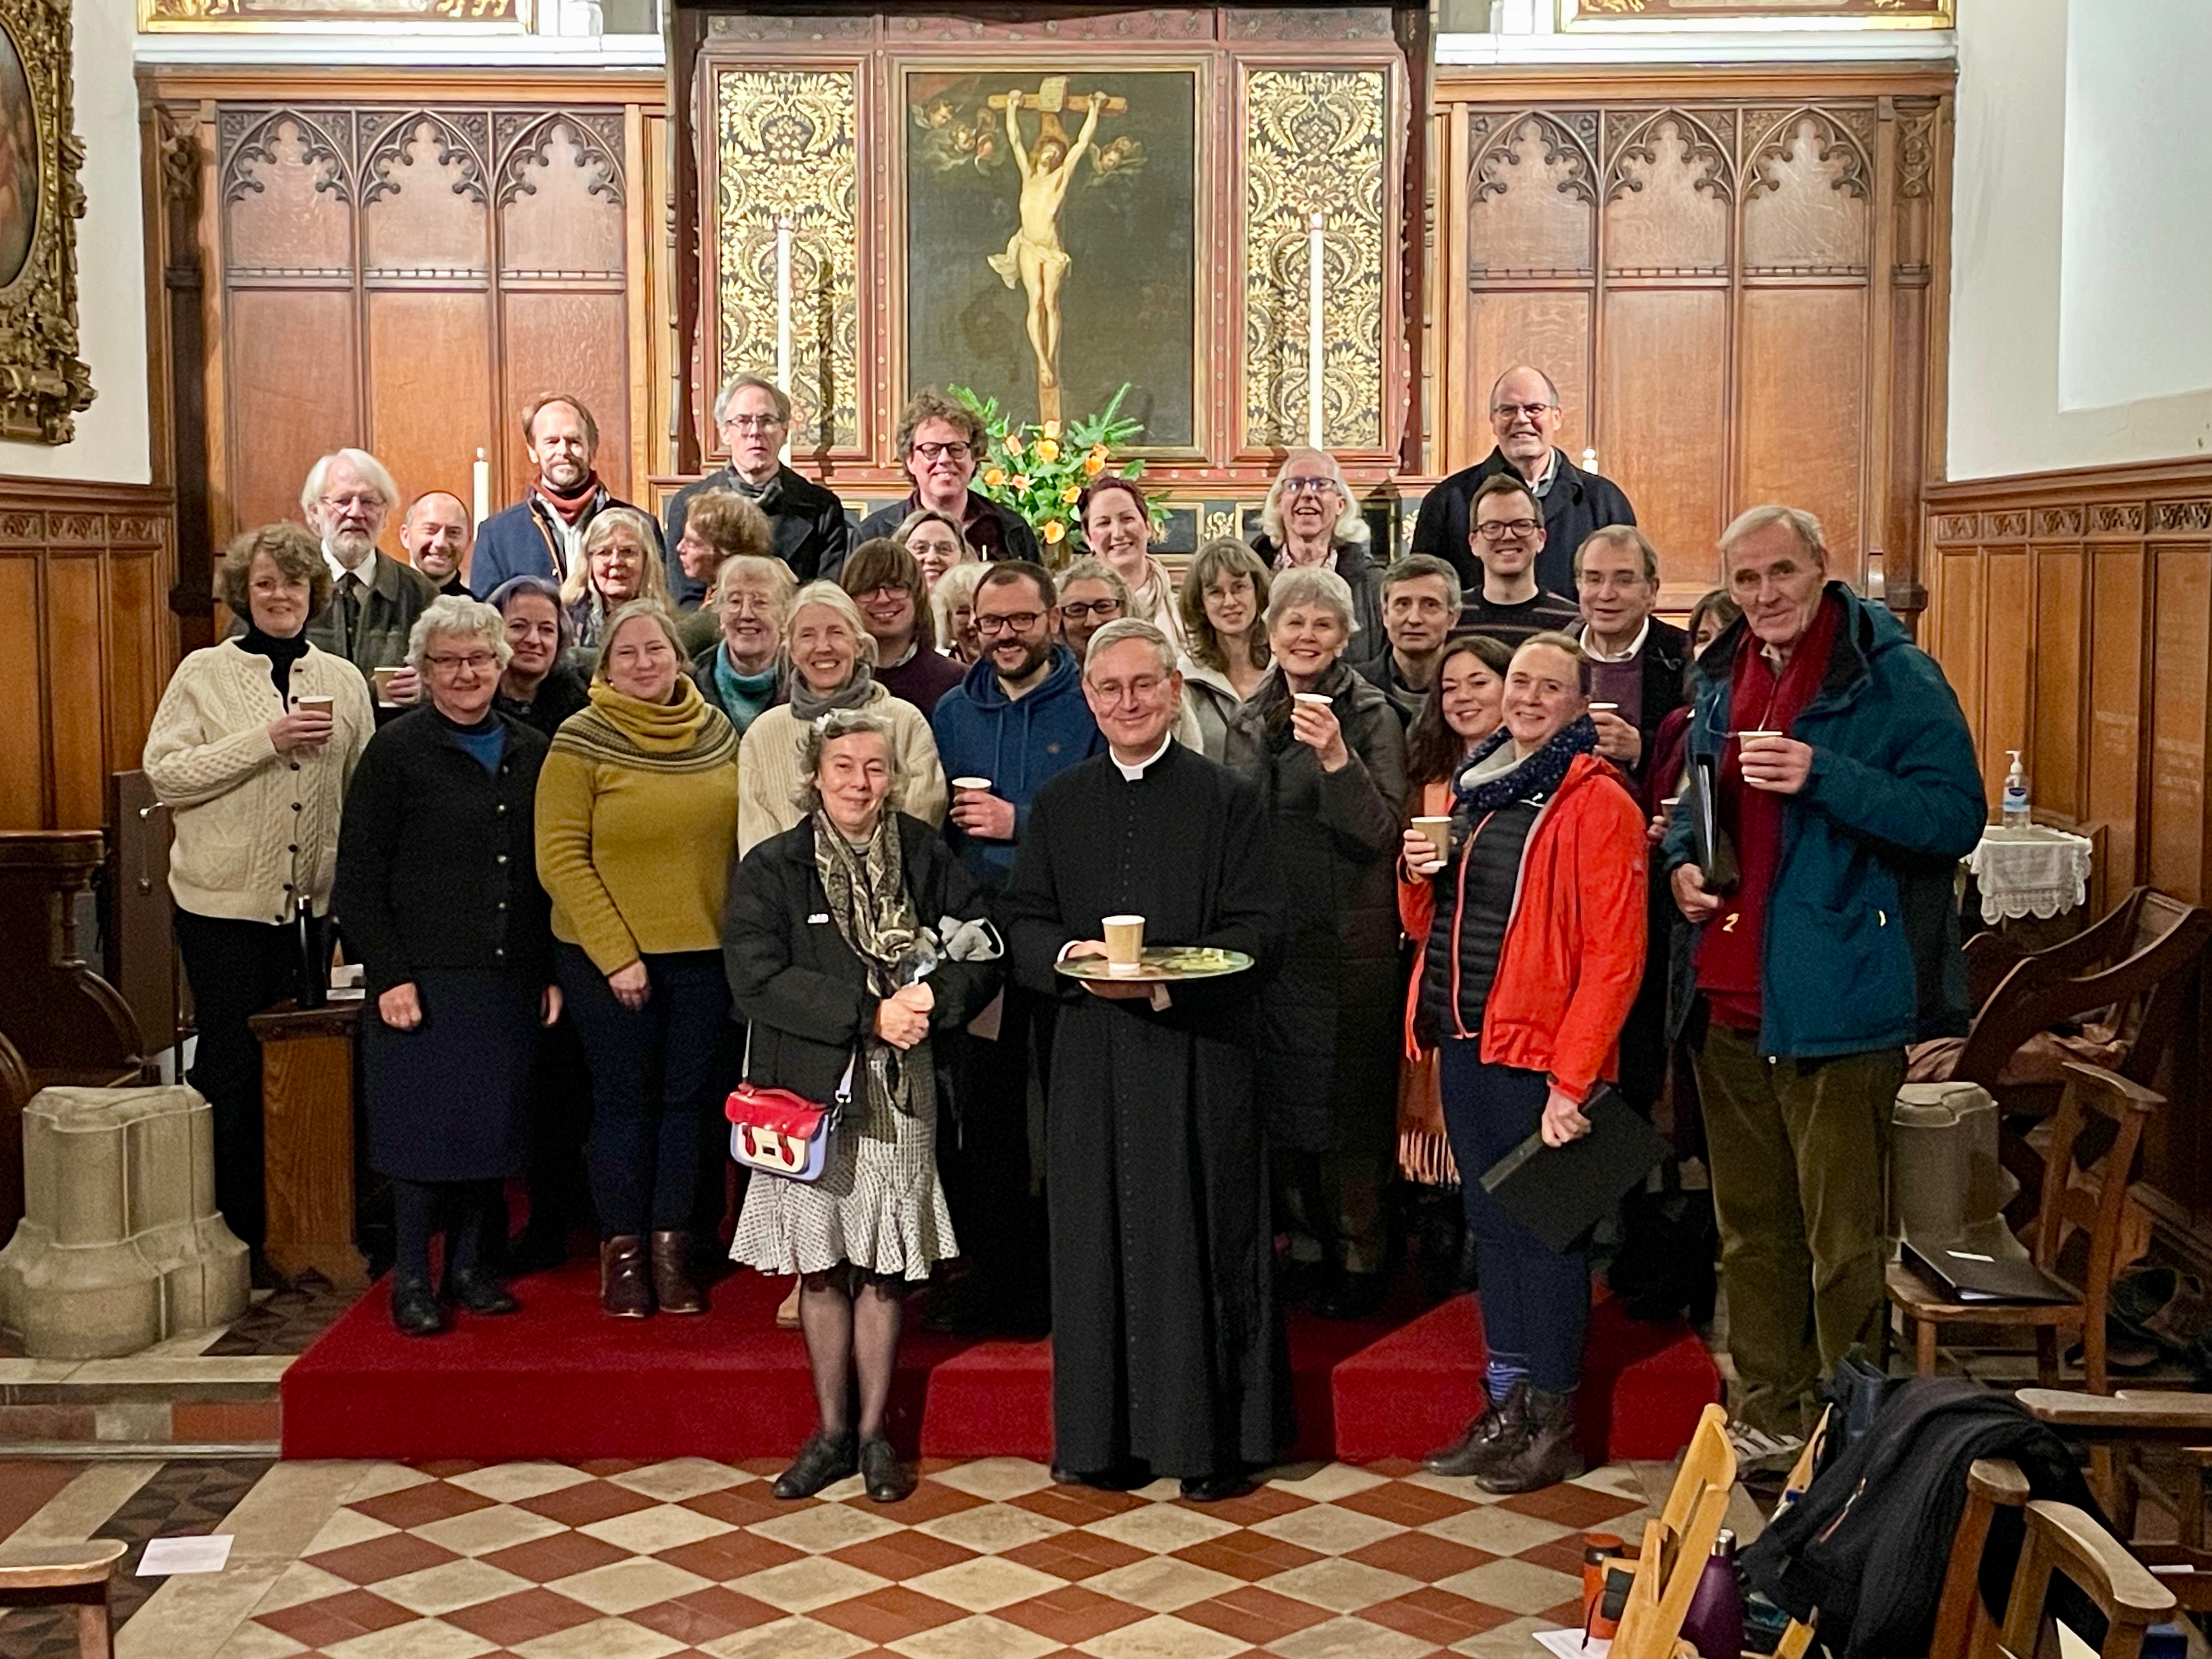 St Botolph's choir after a service